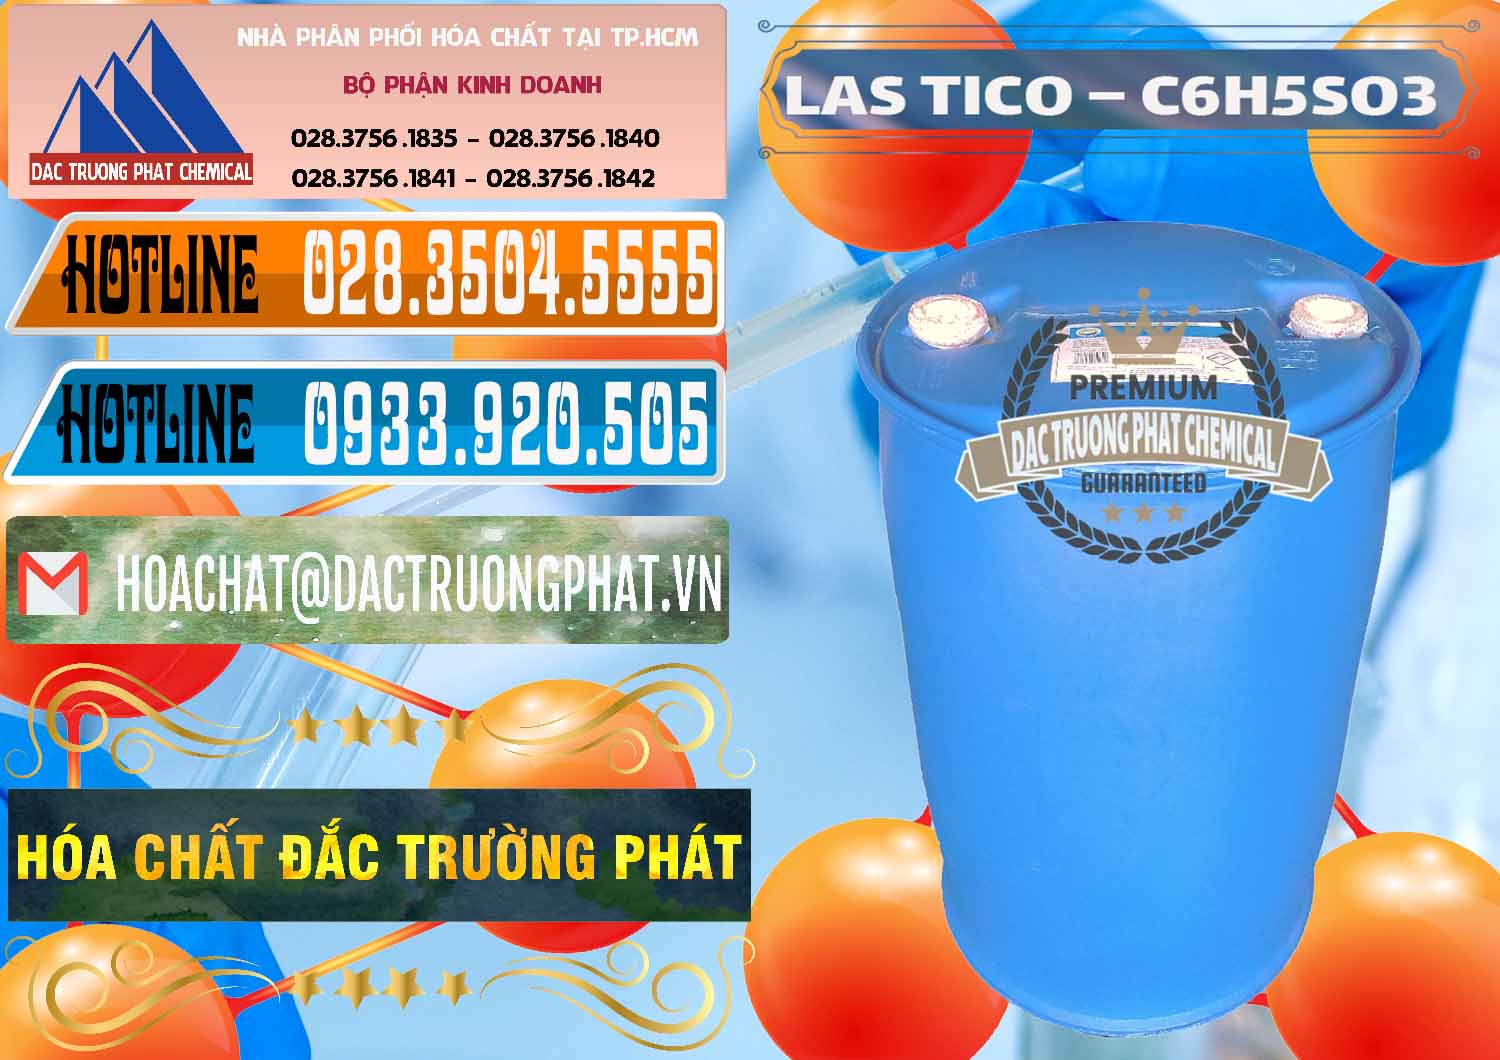 Cty cung cấp ( kinh doanh ) Chất tạo bọt Las H Tico Việt Nam - 0190 - Nhà phân phối - cung ứng hóa chất tại TP.HCM - stmp.net